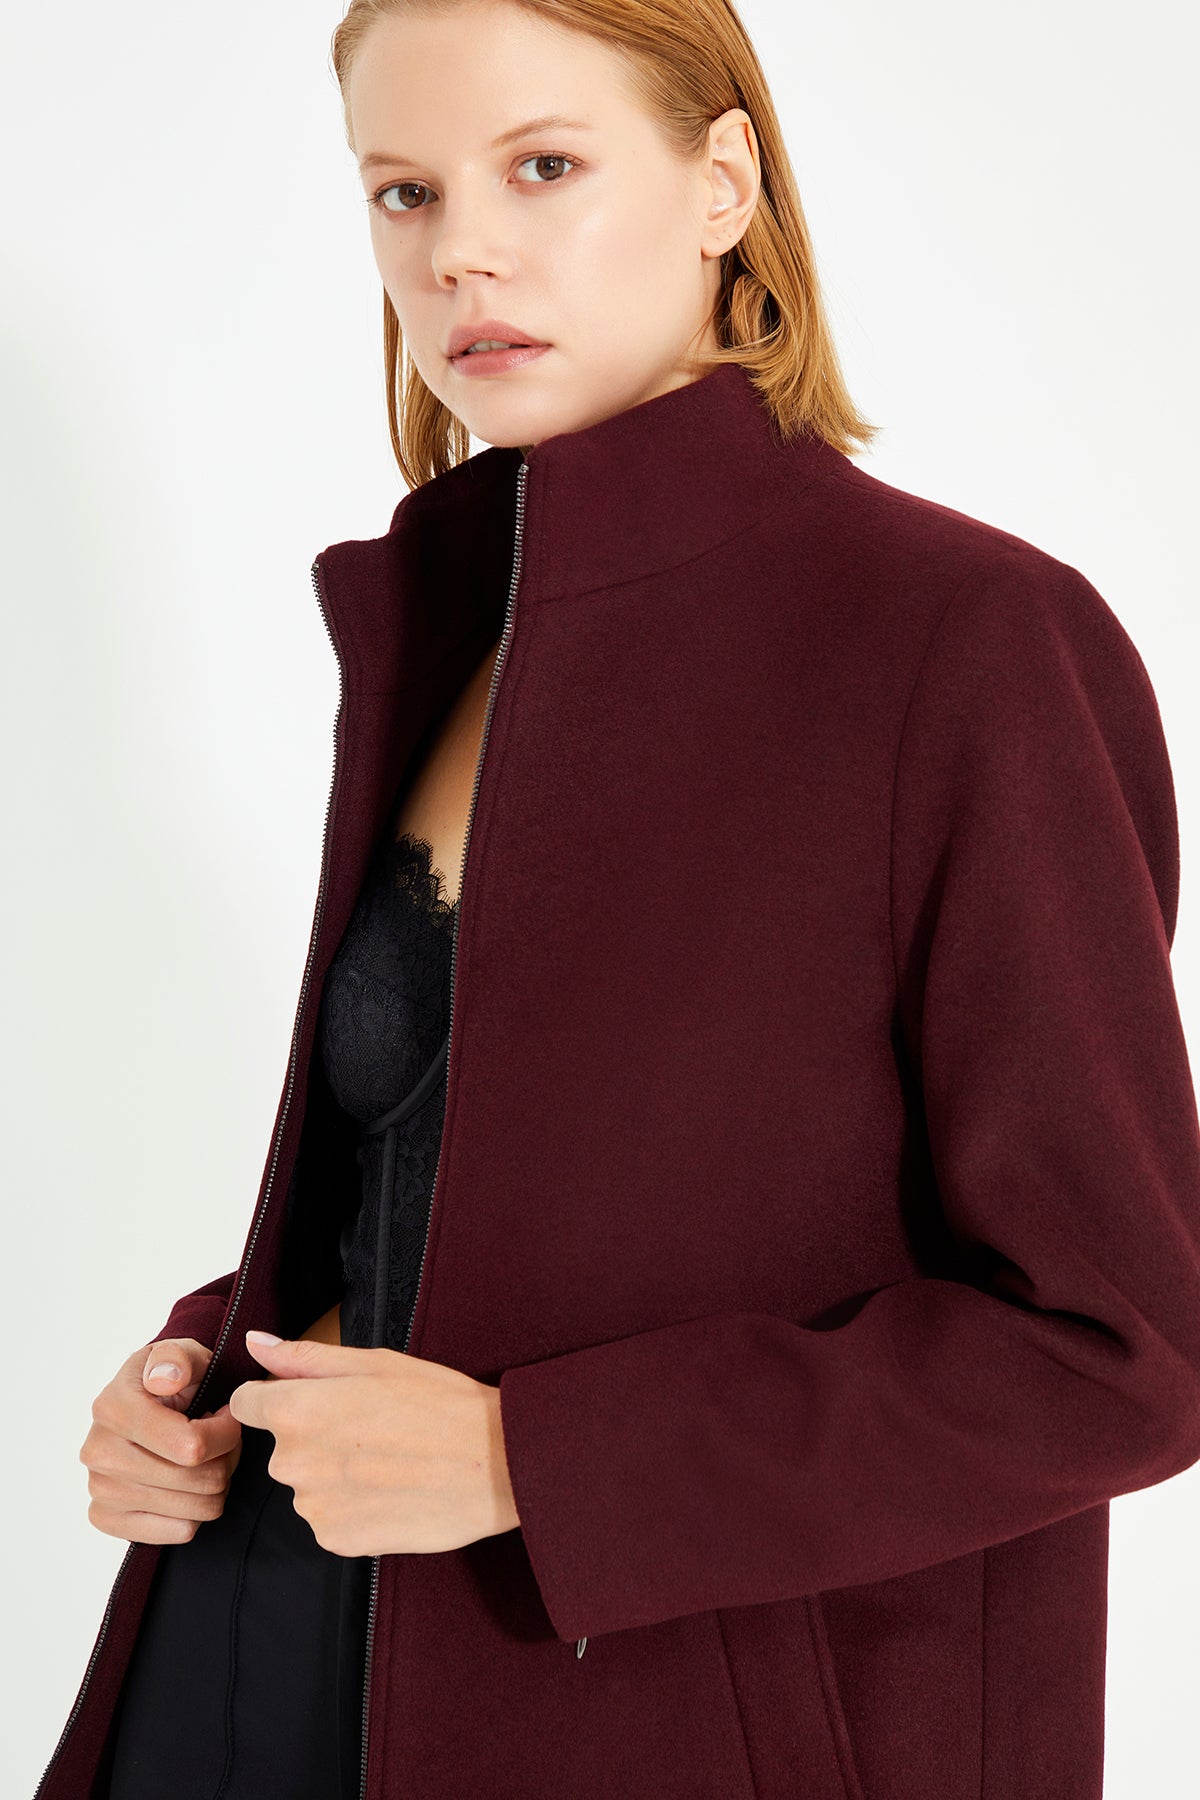 Burgundy Front And Collar Zip Detailed women's Coat